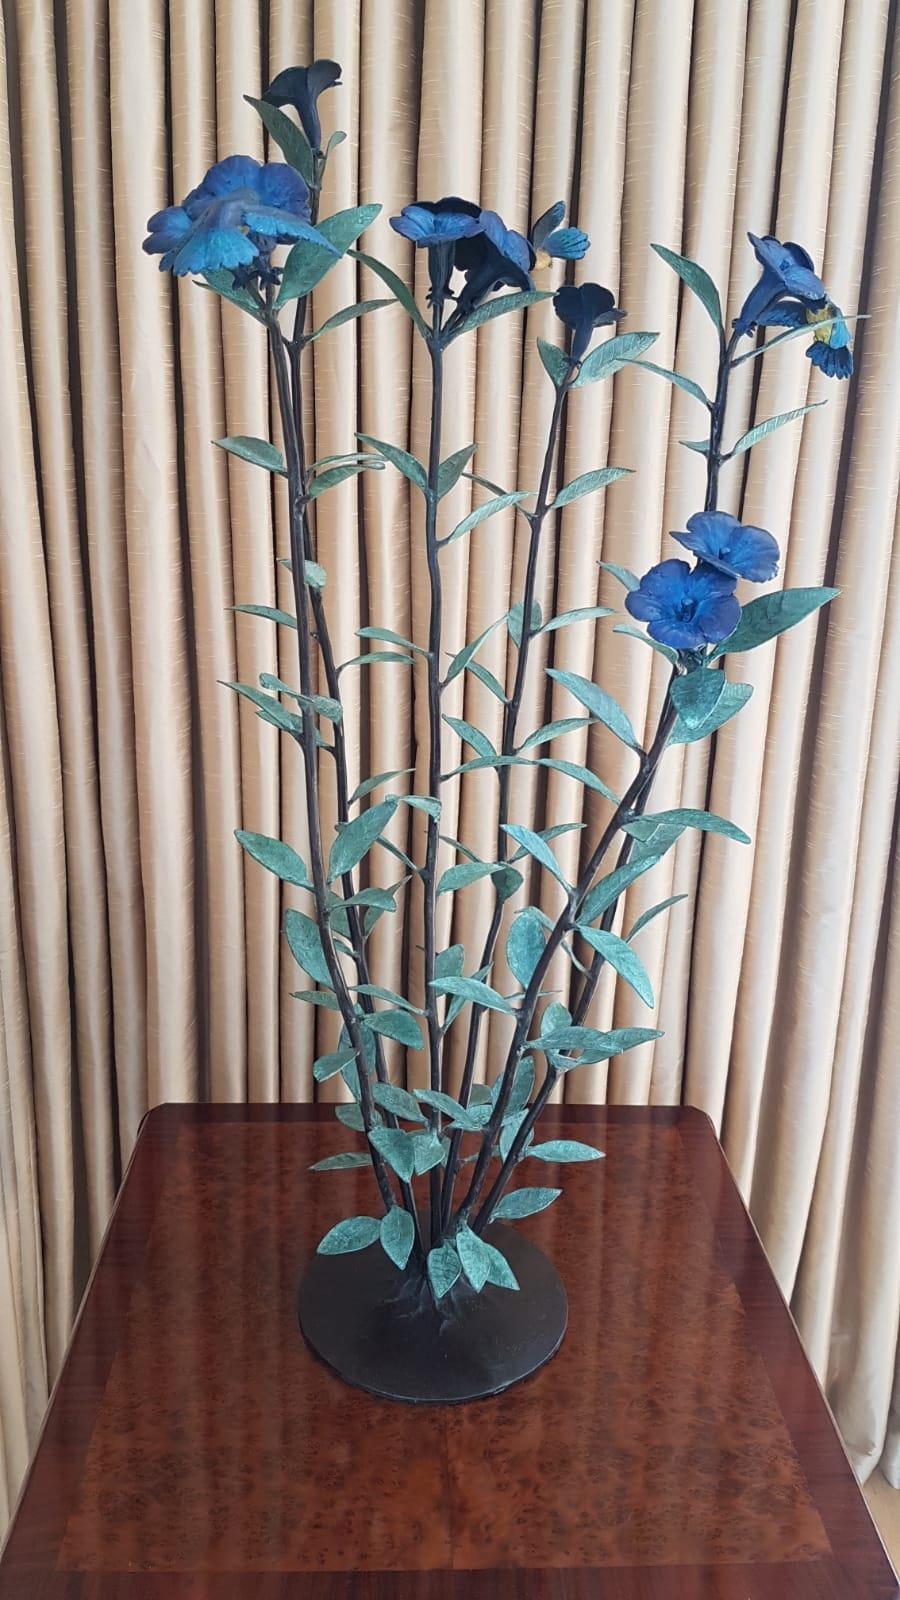 Hummingbird sculpture flowers